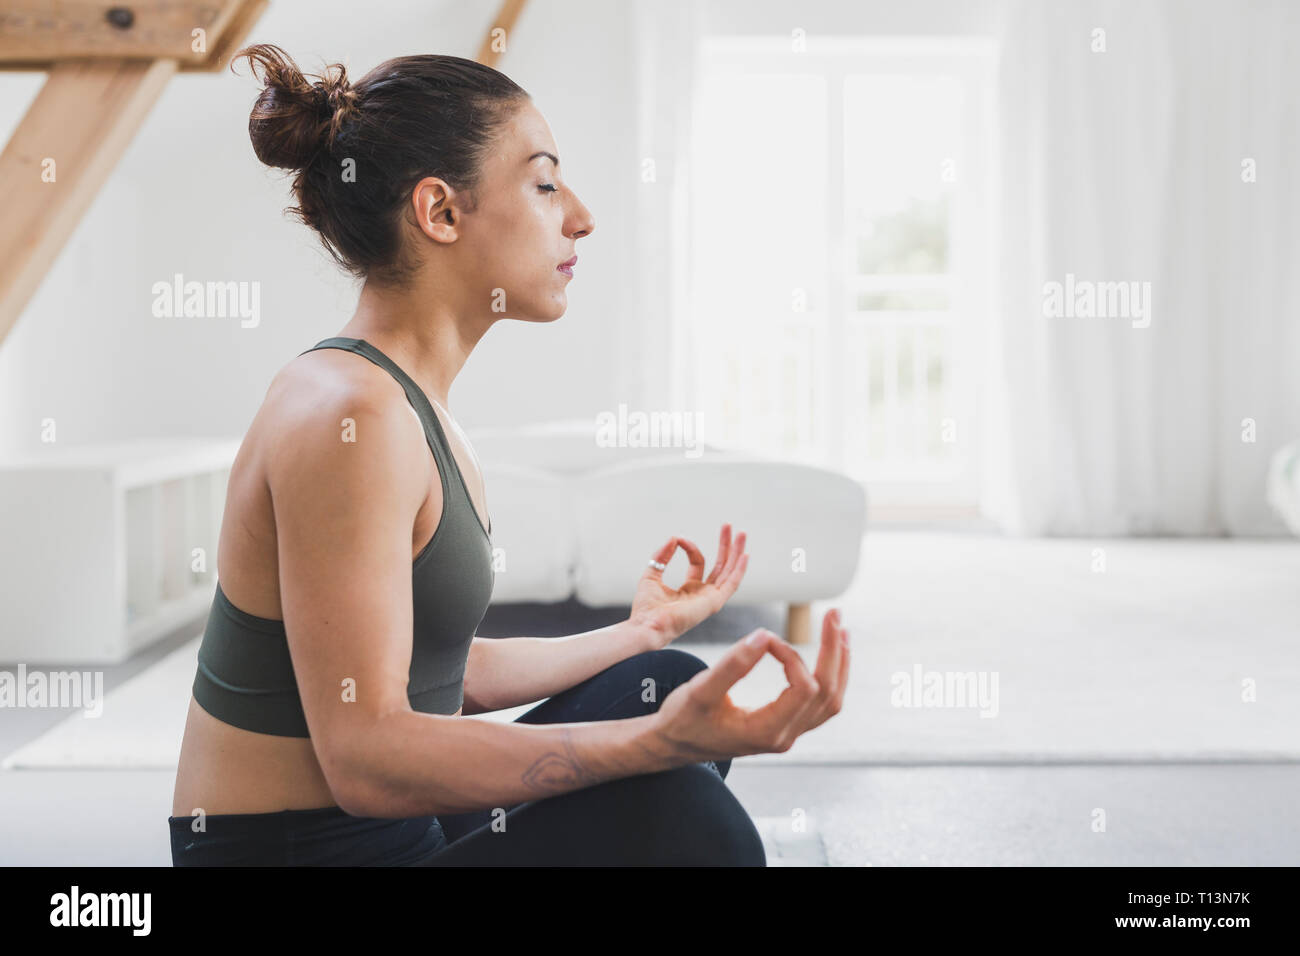 Mujer sentada practicando yoga Foto de stock